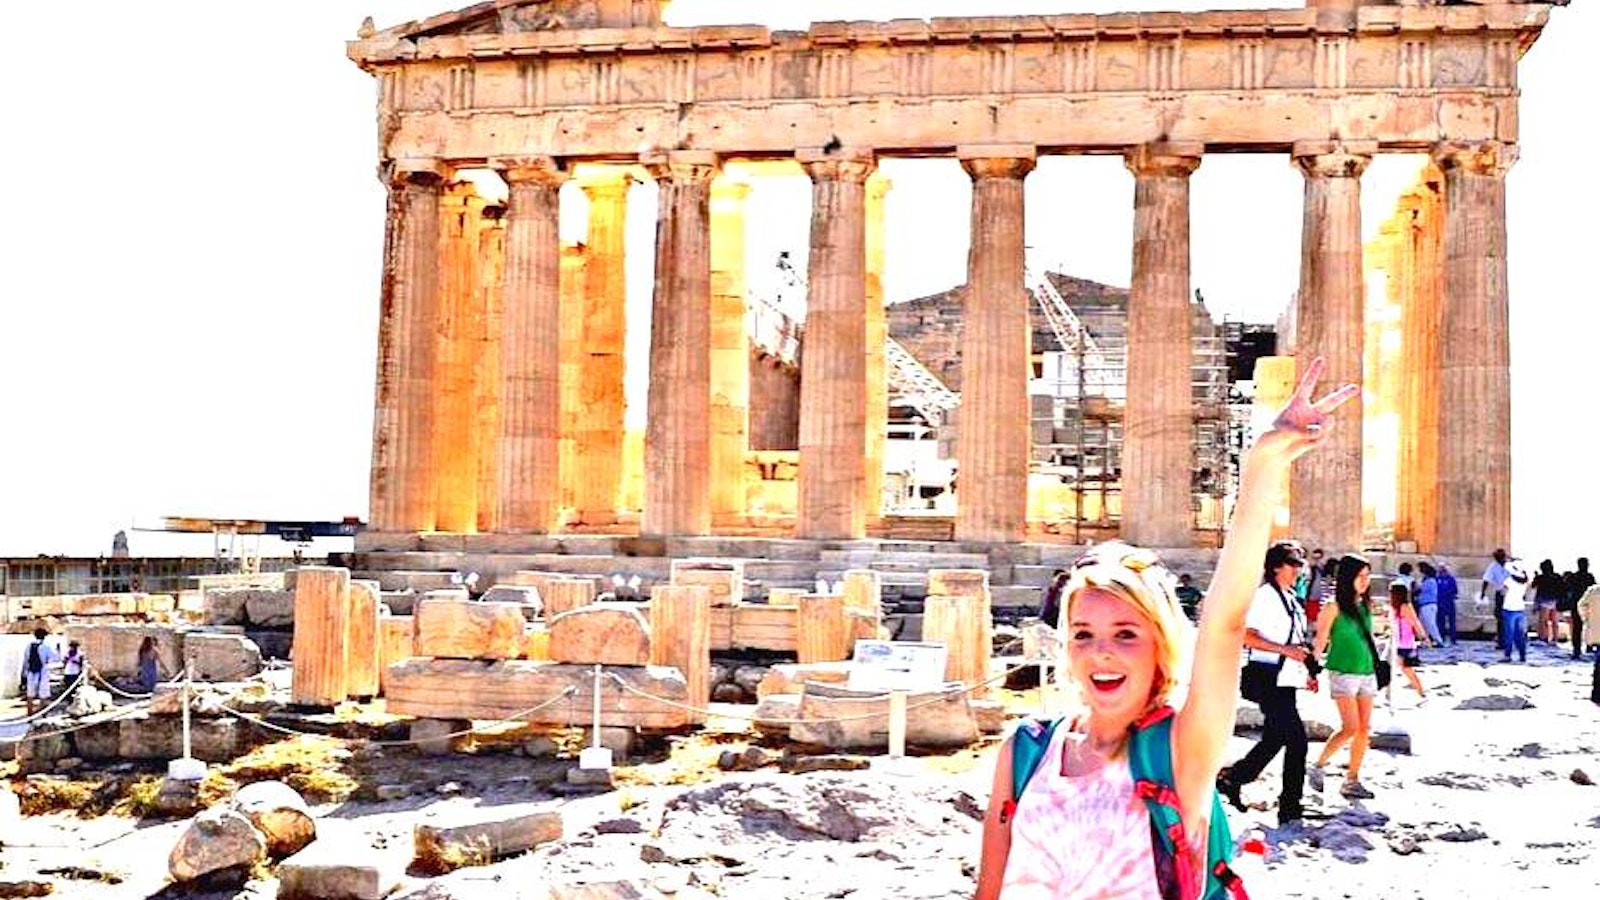 Exploring the Parthenon